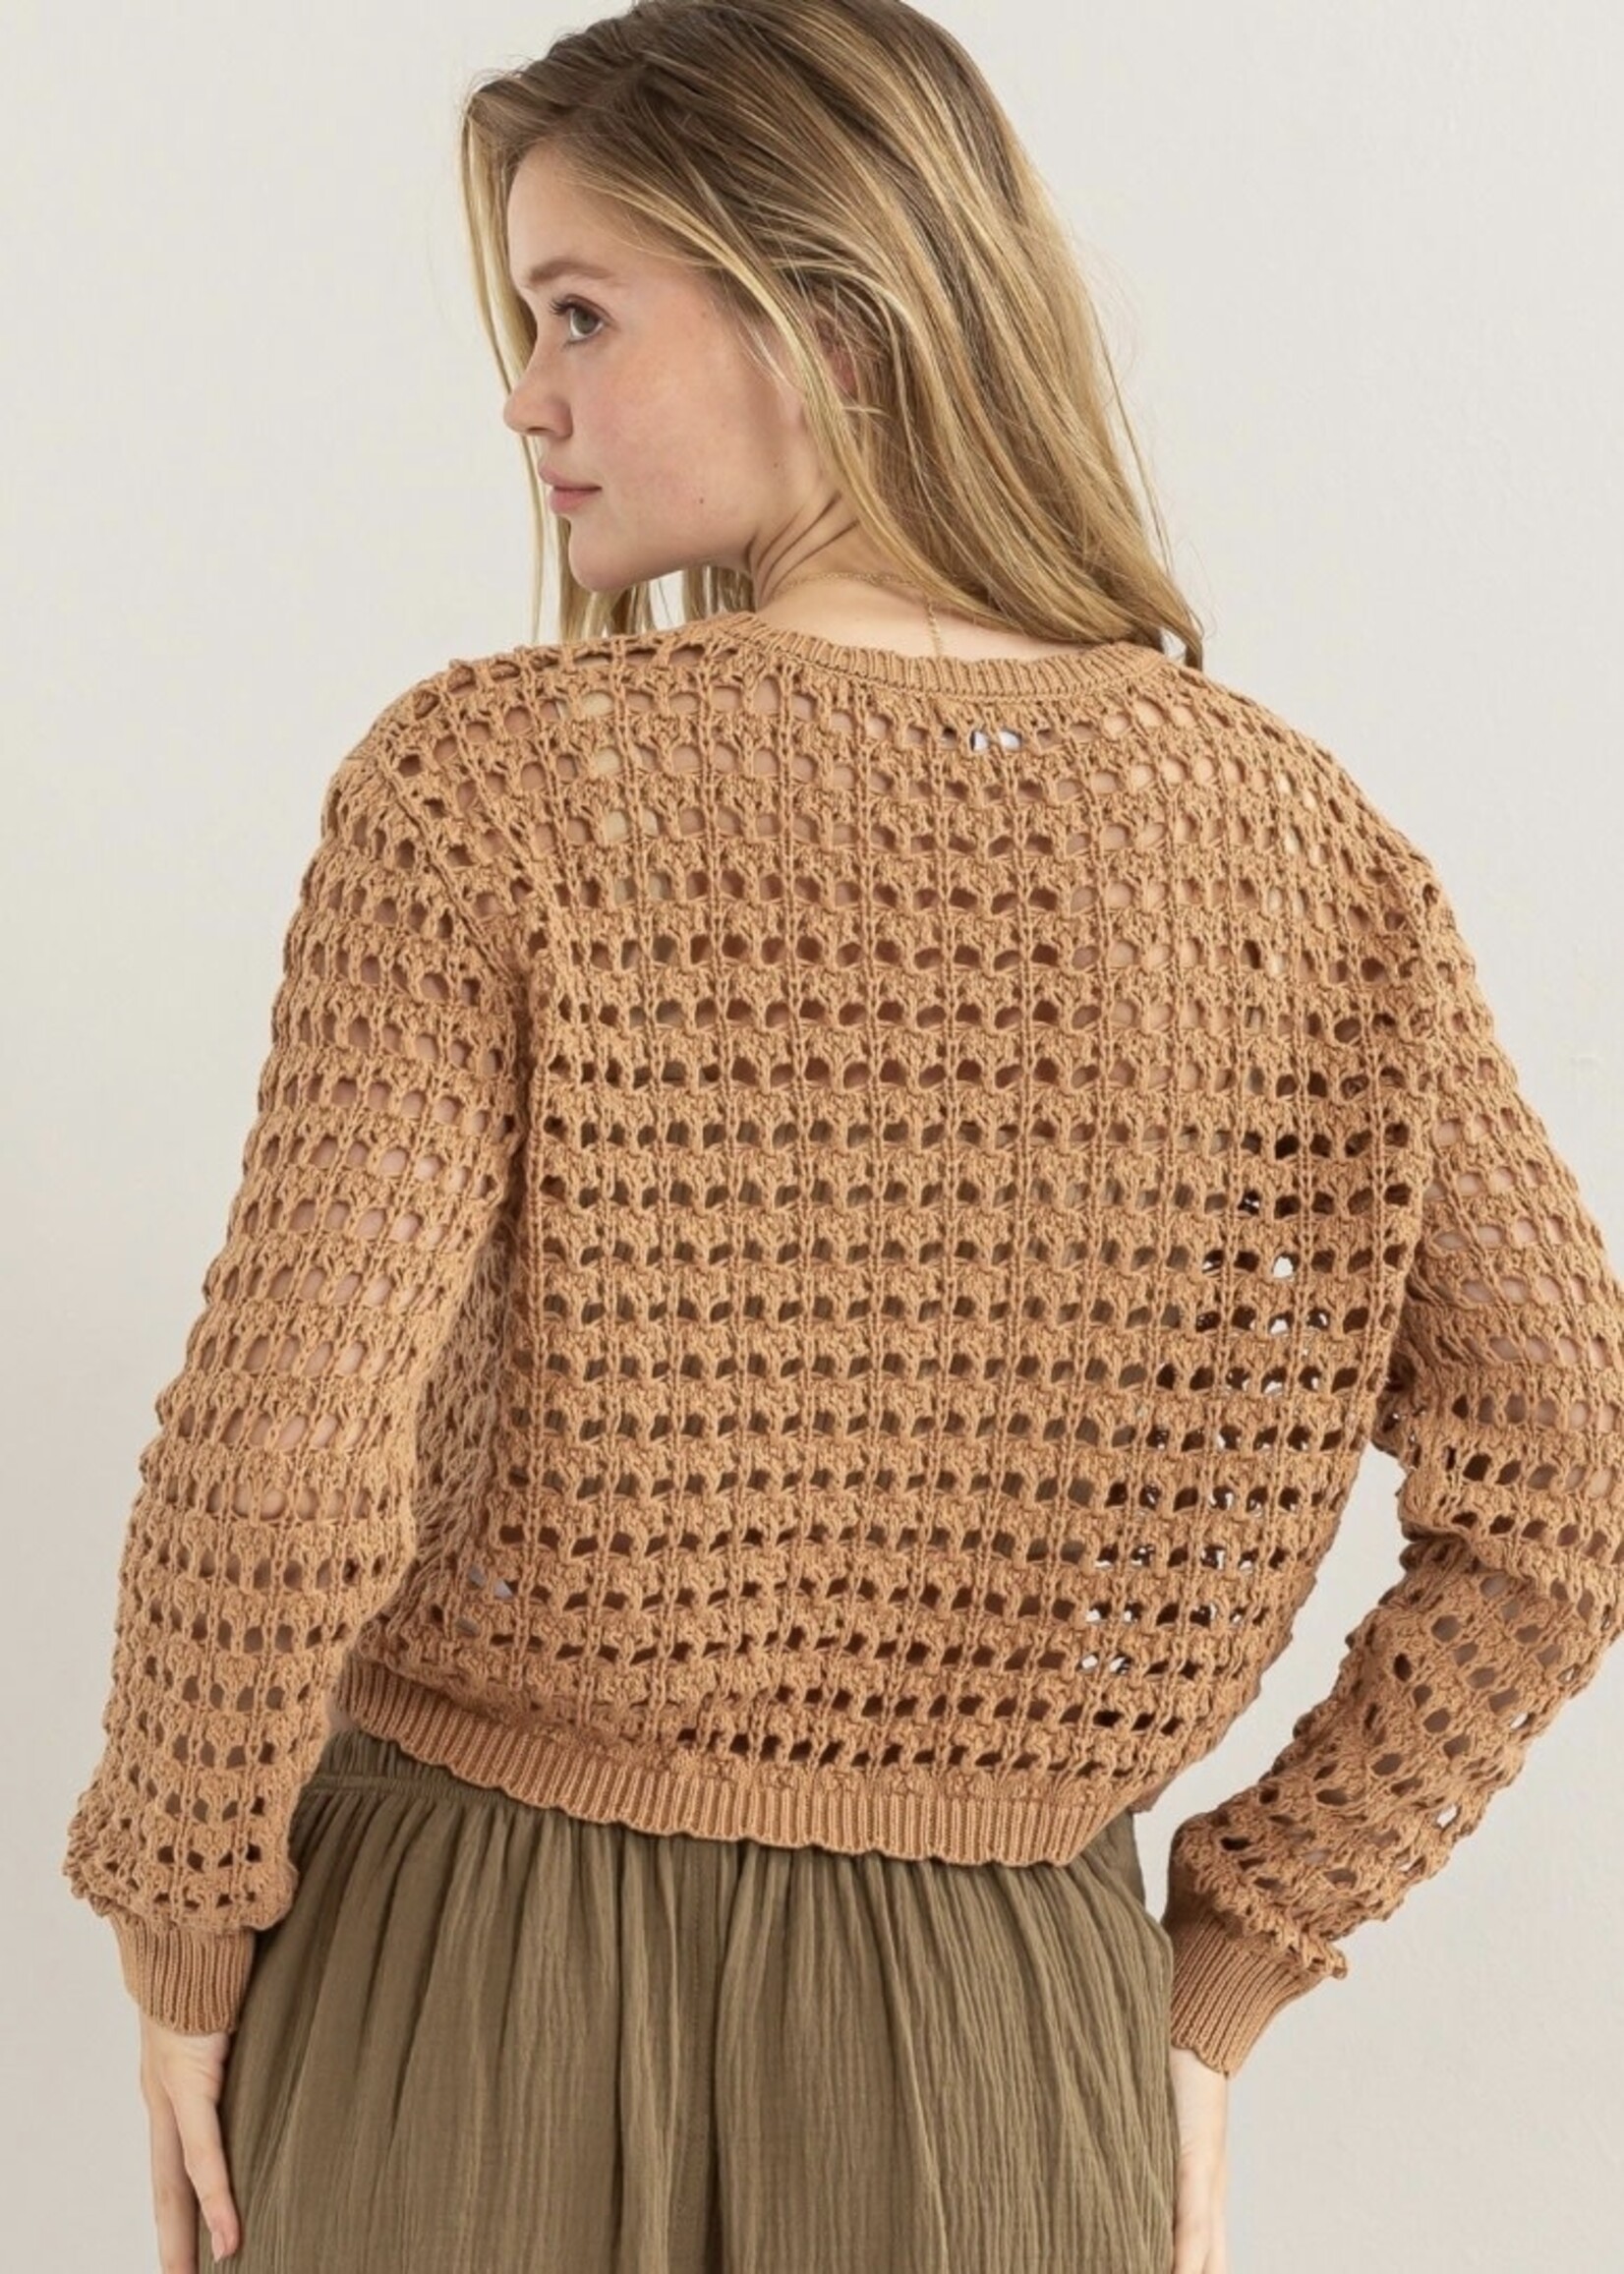 Venita Open Stitch Sweater